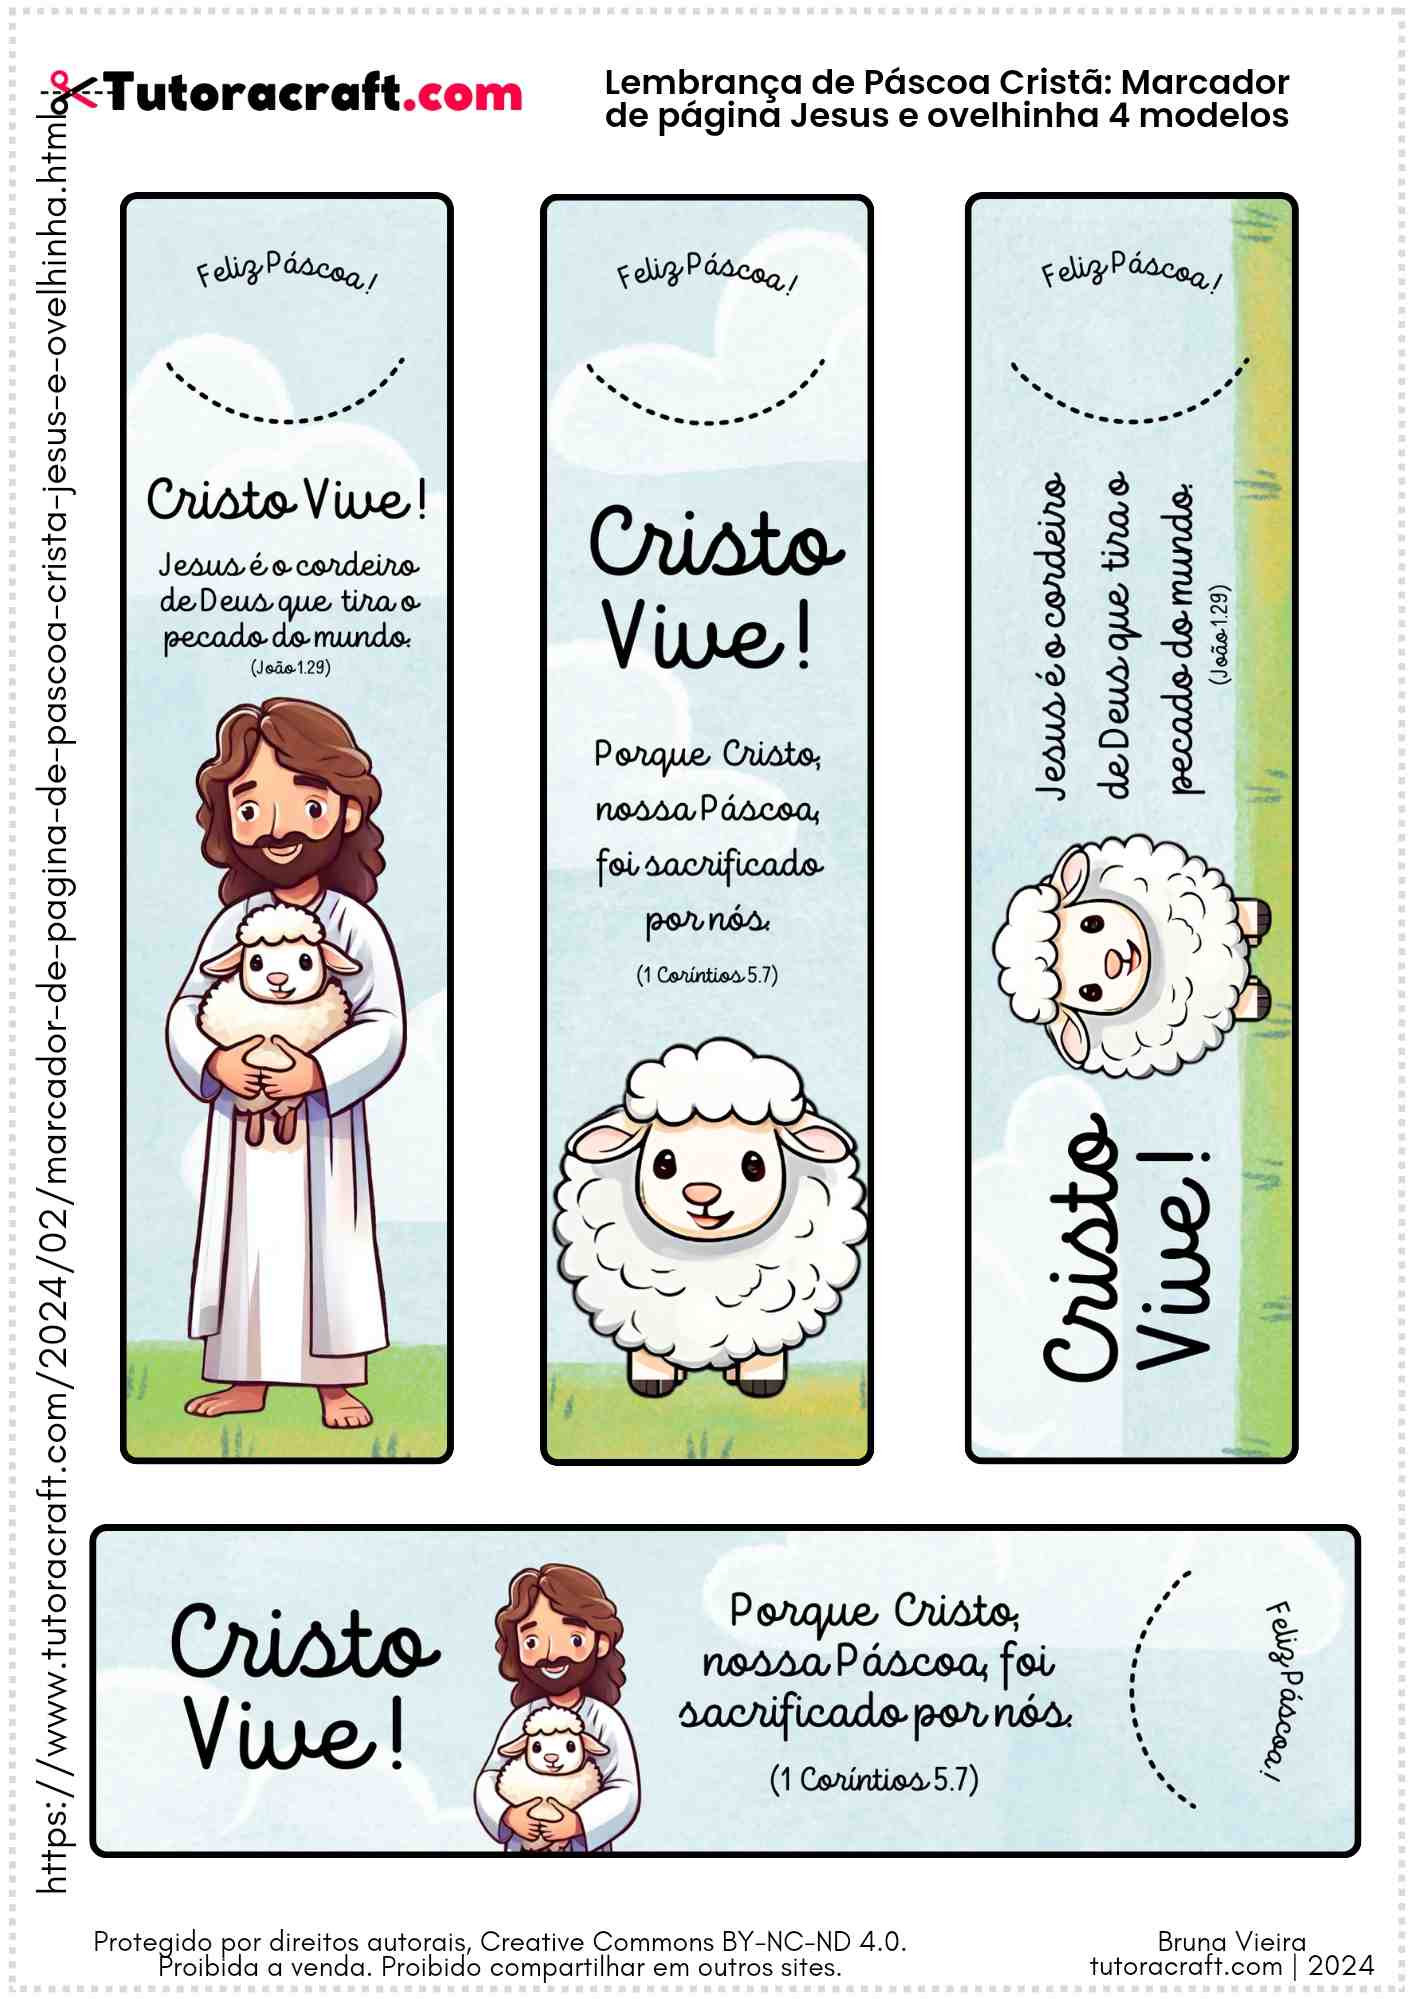 Página com os 4 modelos de marcadores de página de páscoa cristã Jesus e ovelhinha